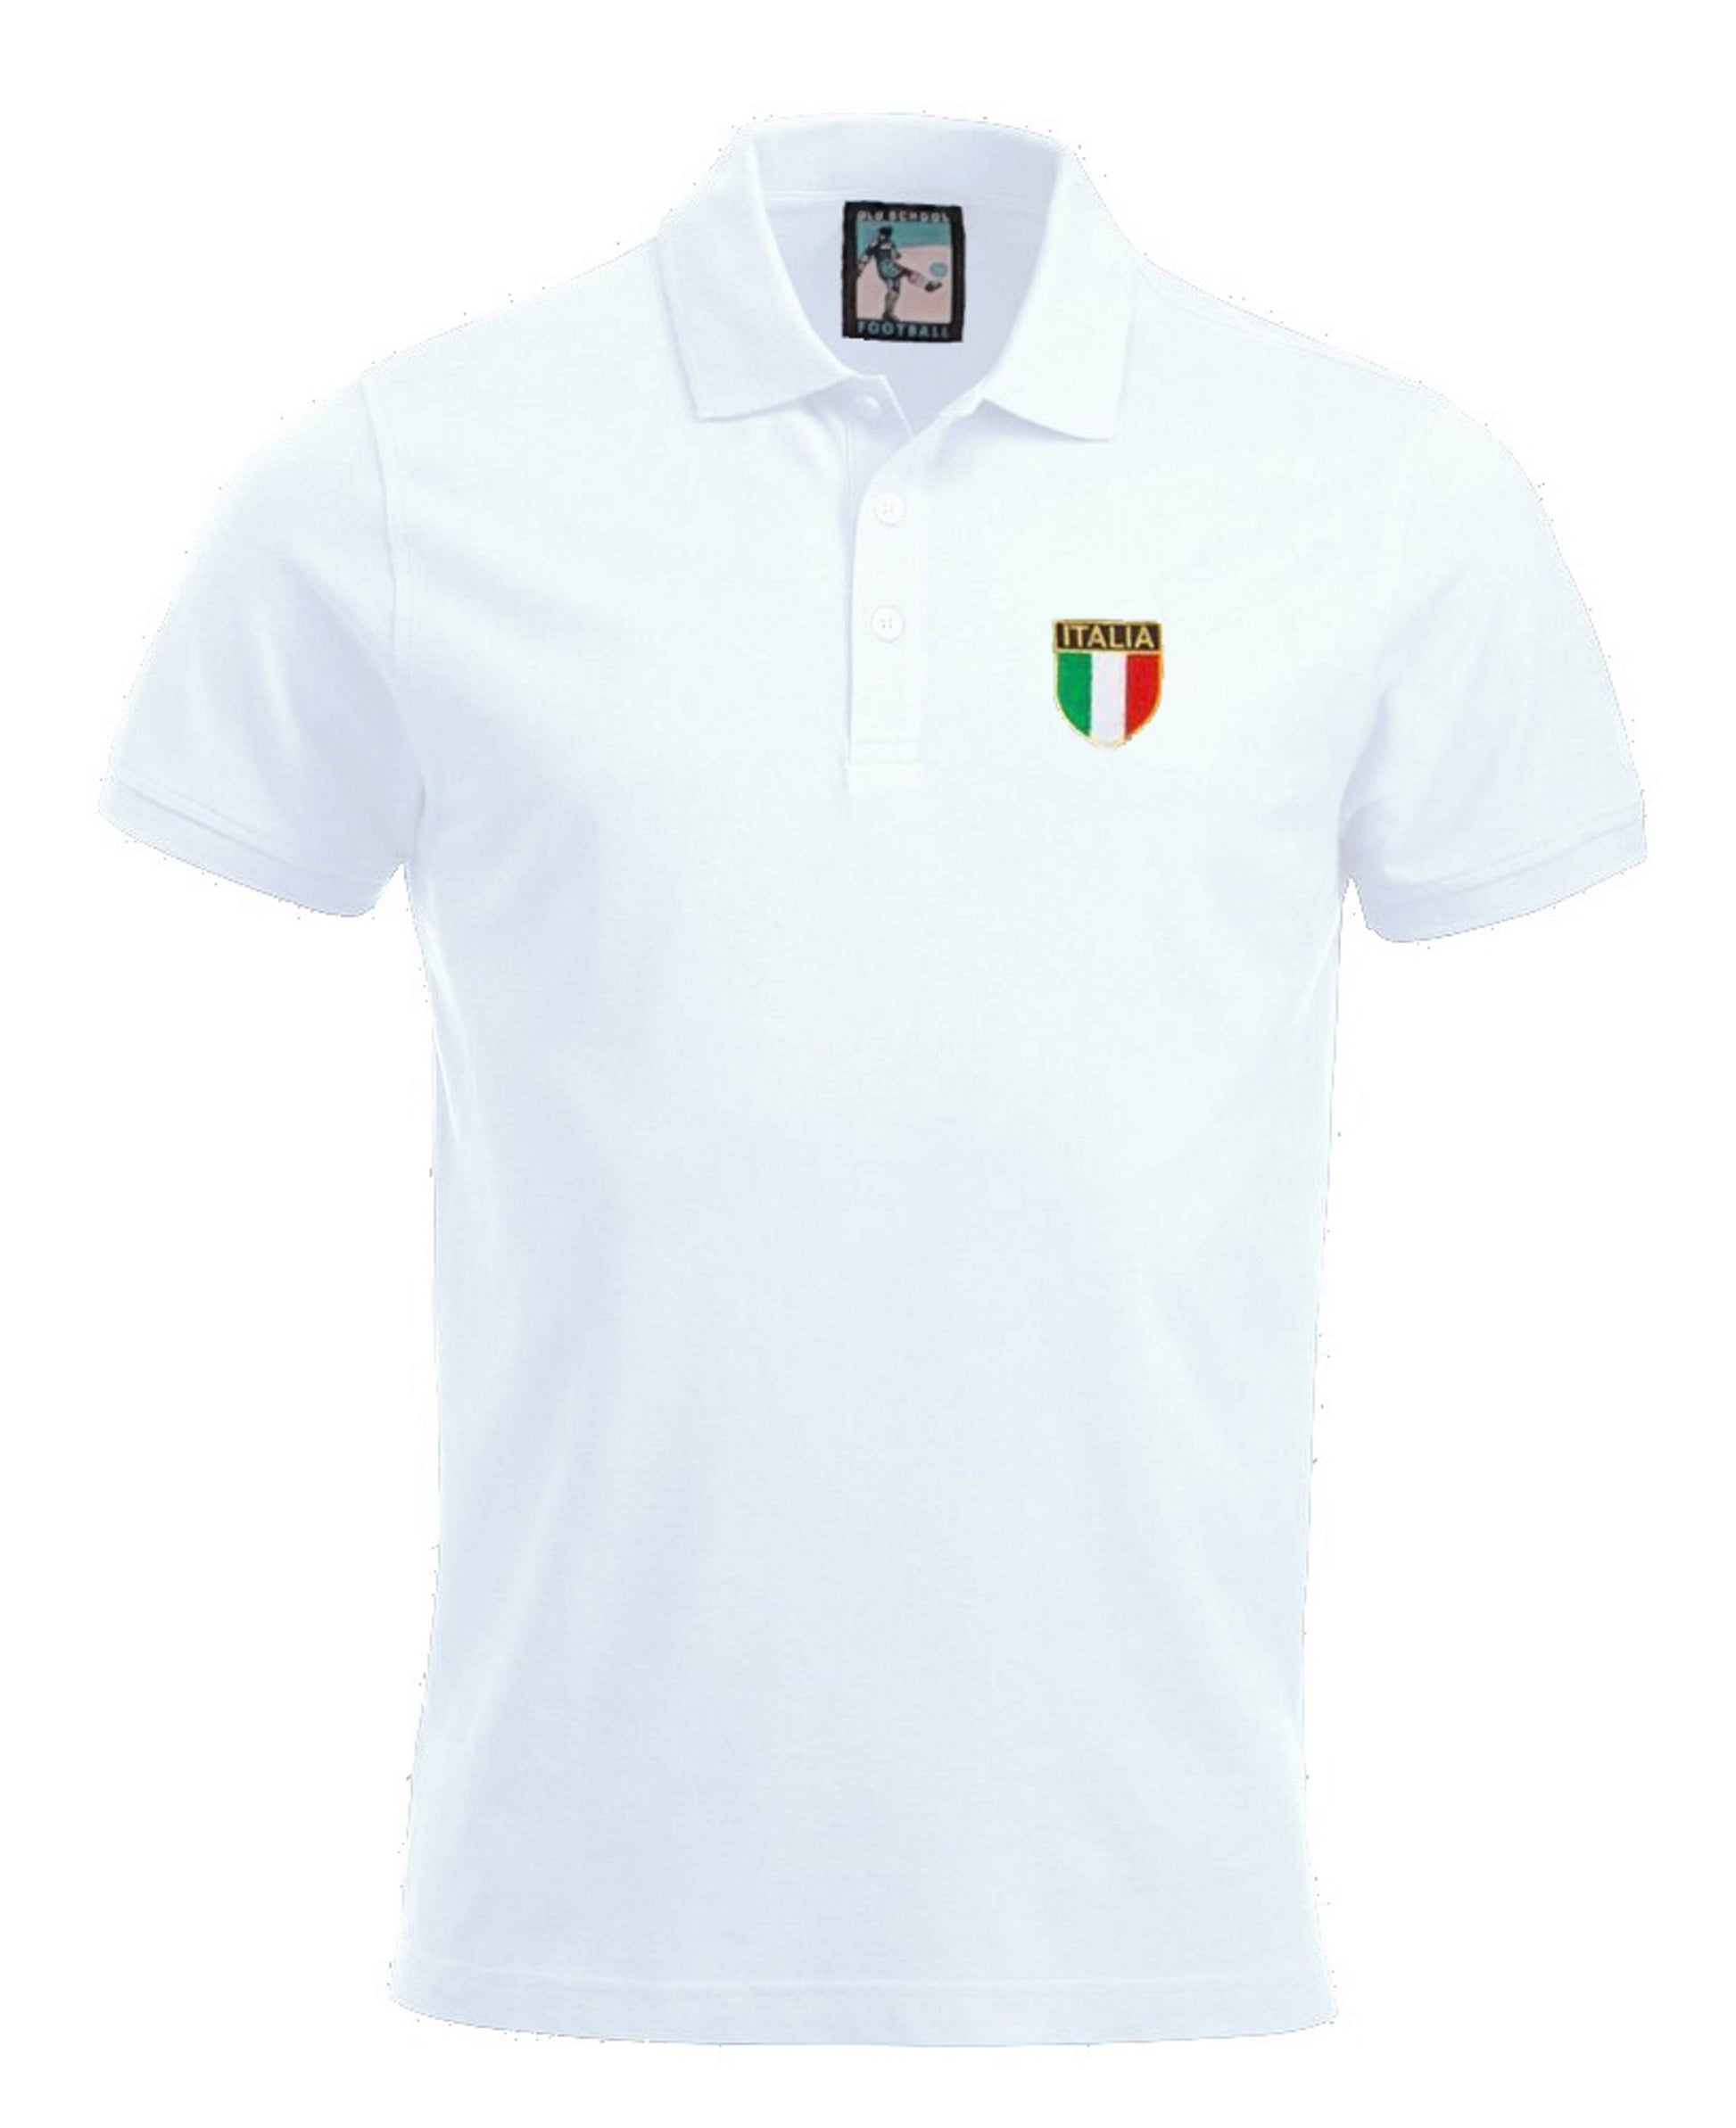 Italy Retro 1960s Football Polo Shirt - Polo